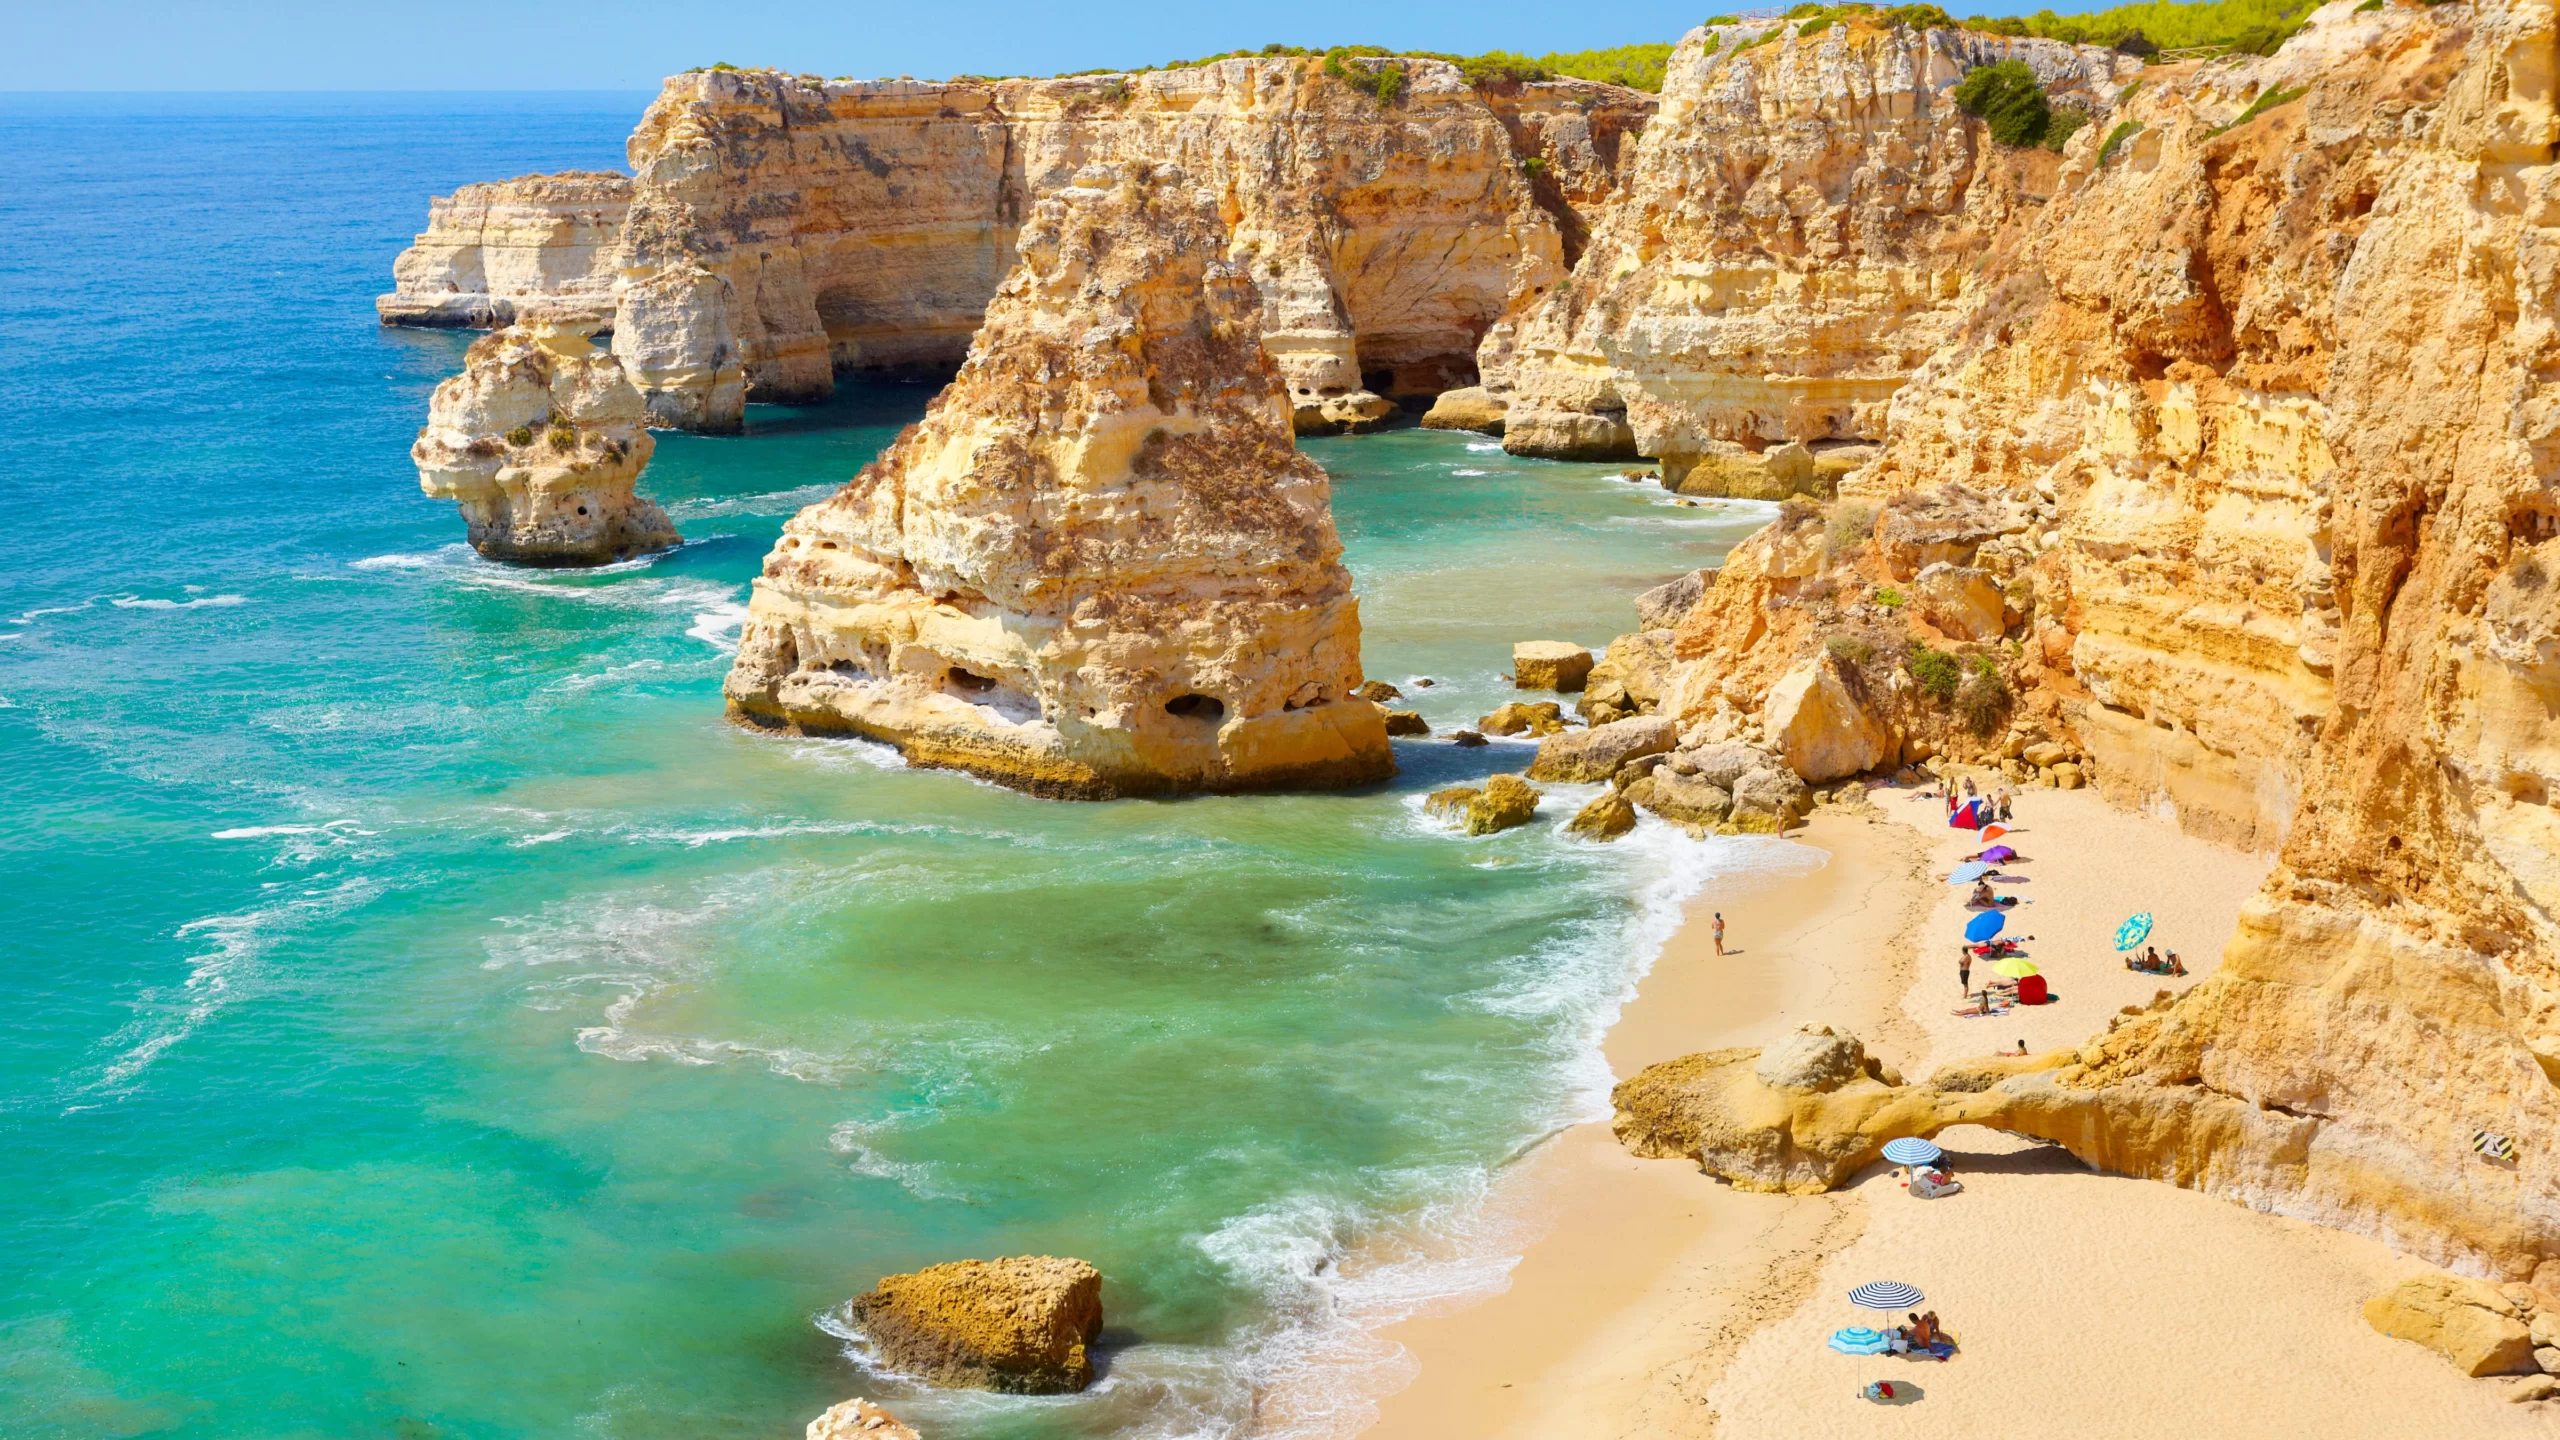 Vacanta de o saptamana in minunatul Algarve, Portugalia – 369 euro (zbor + cazare) – cunoscut pentru plaje exotice